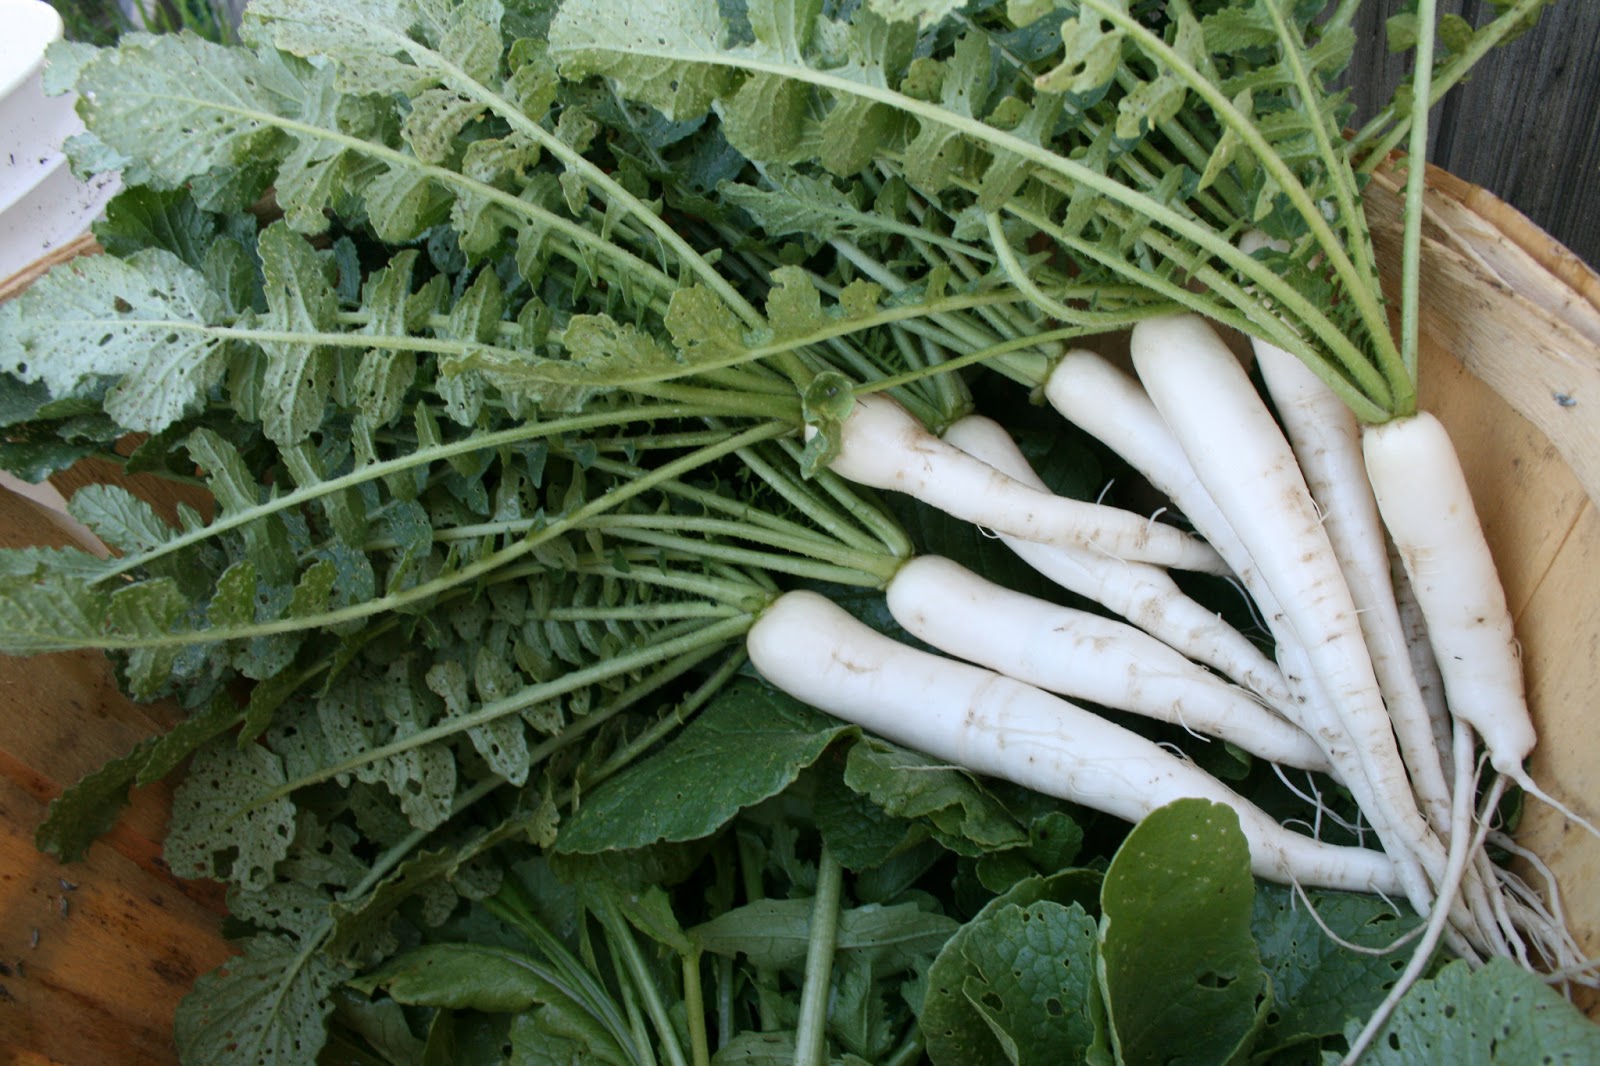 Củ cải có chứa indole-3-carbinol giúp gan giải độc và chữa lành các tổn thương